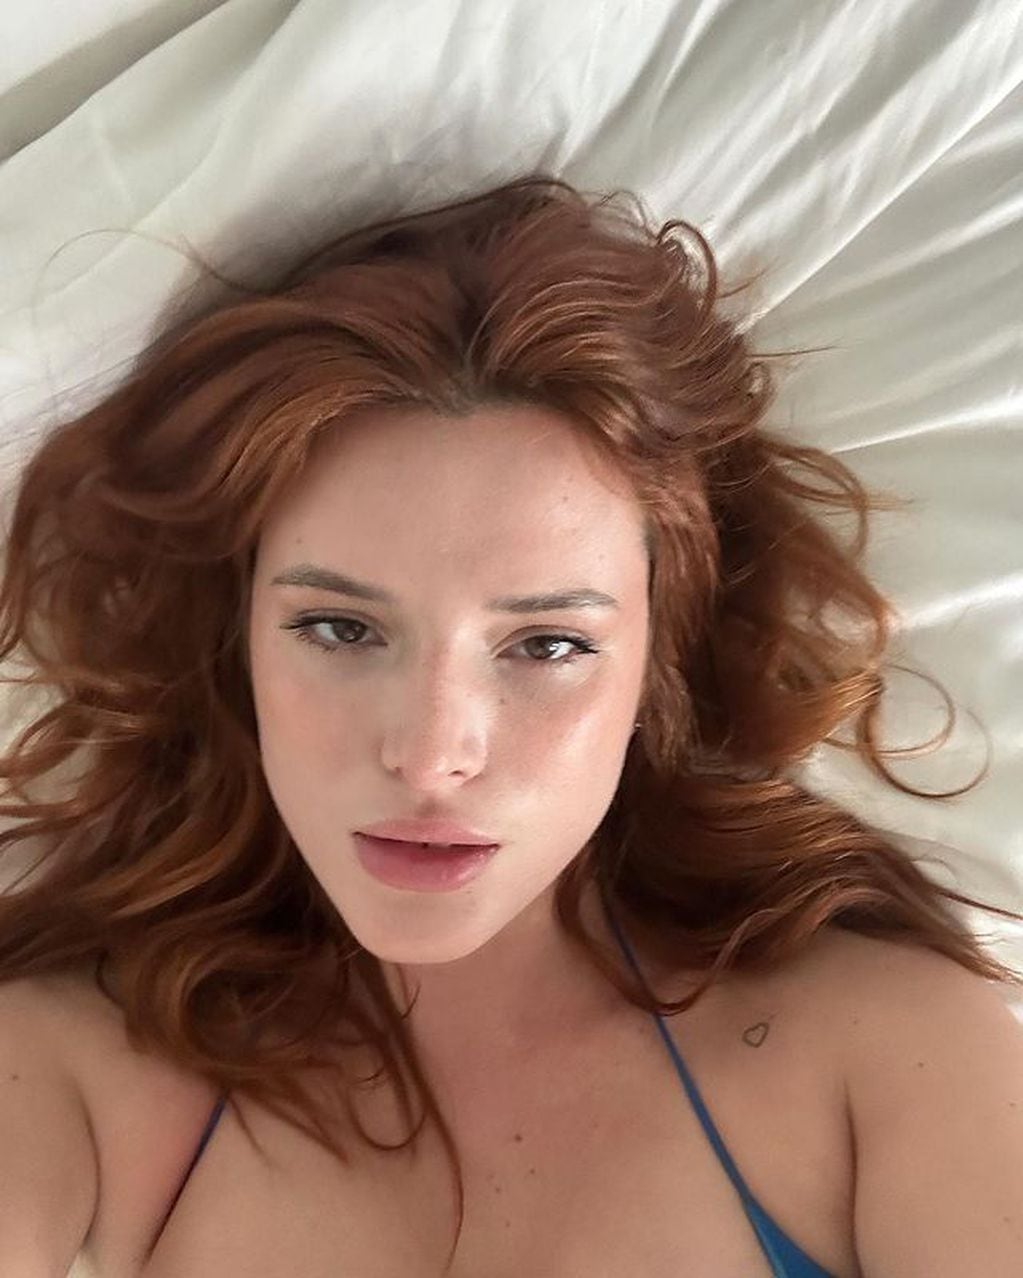 La actriz encandiló con su belleza al natural en las redes sociales desde la cama / Foto: Instagram